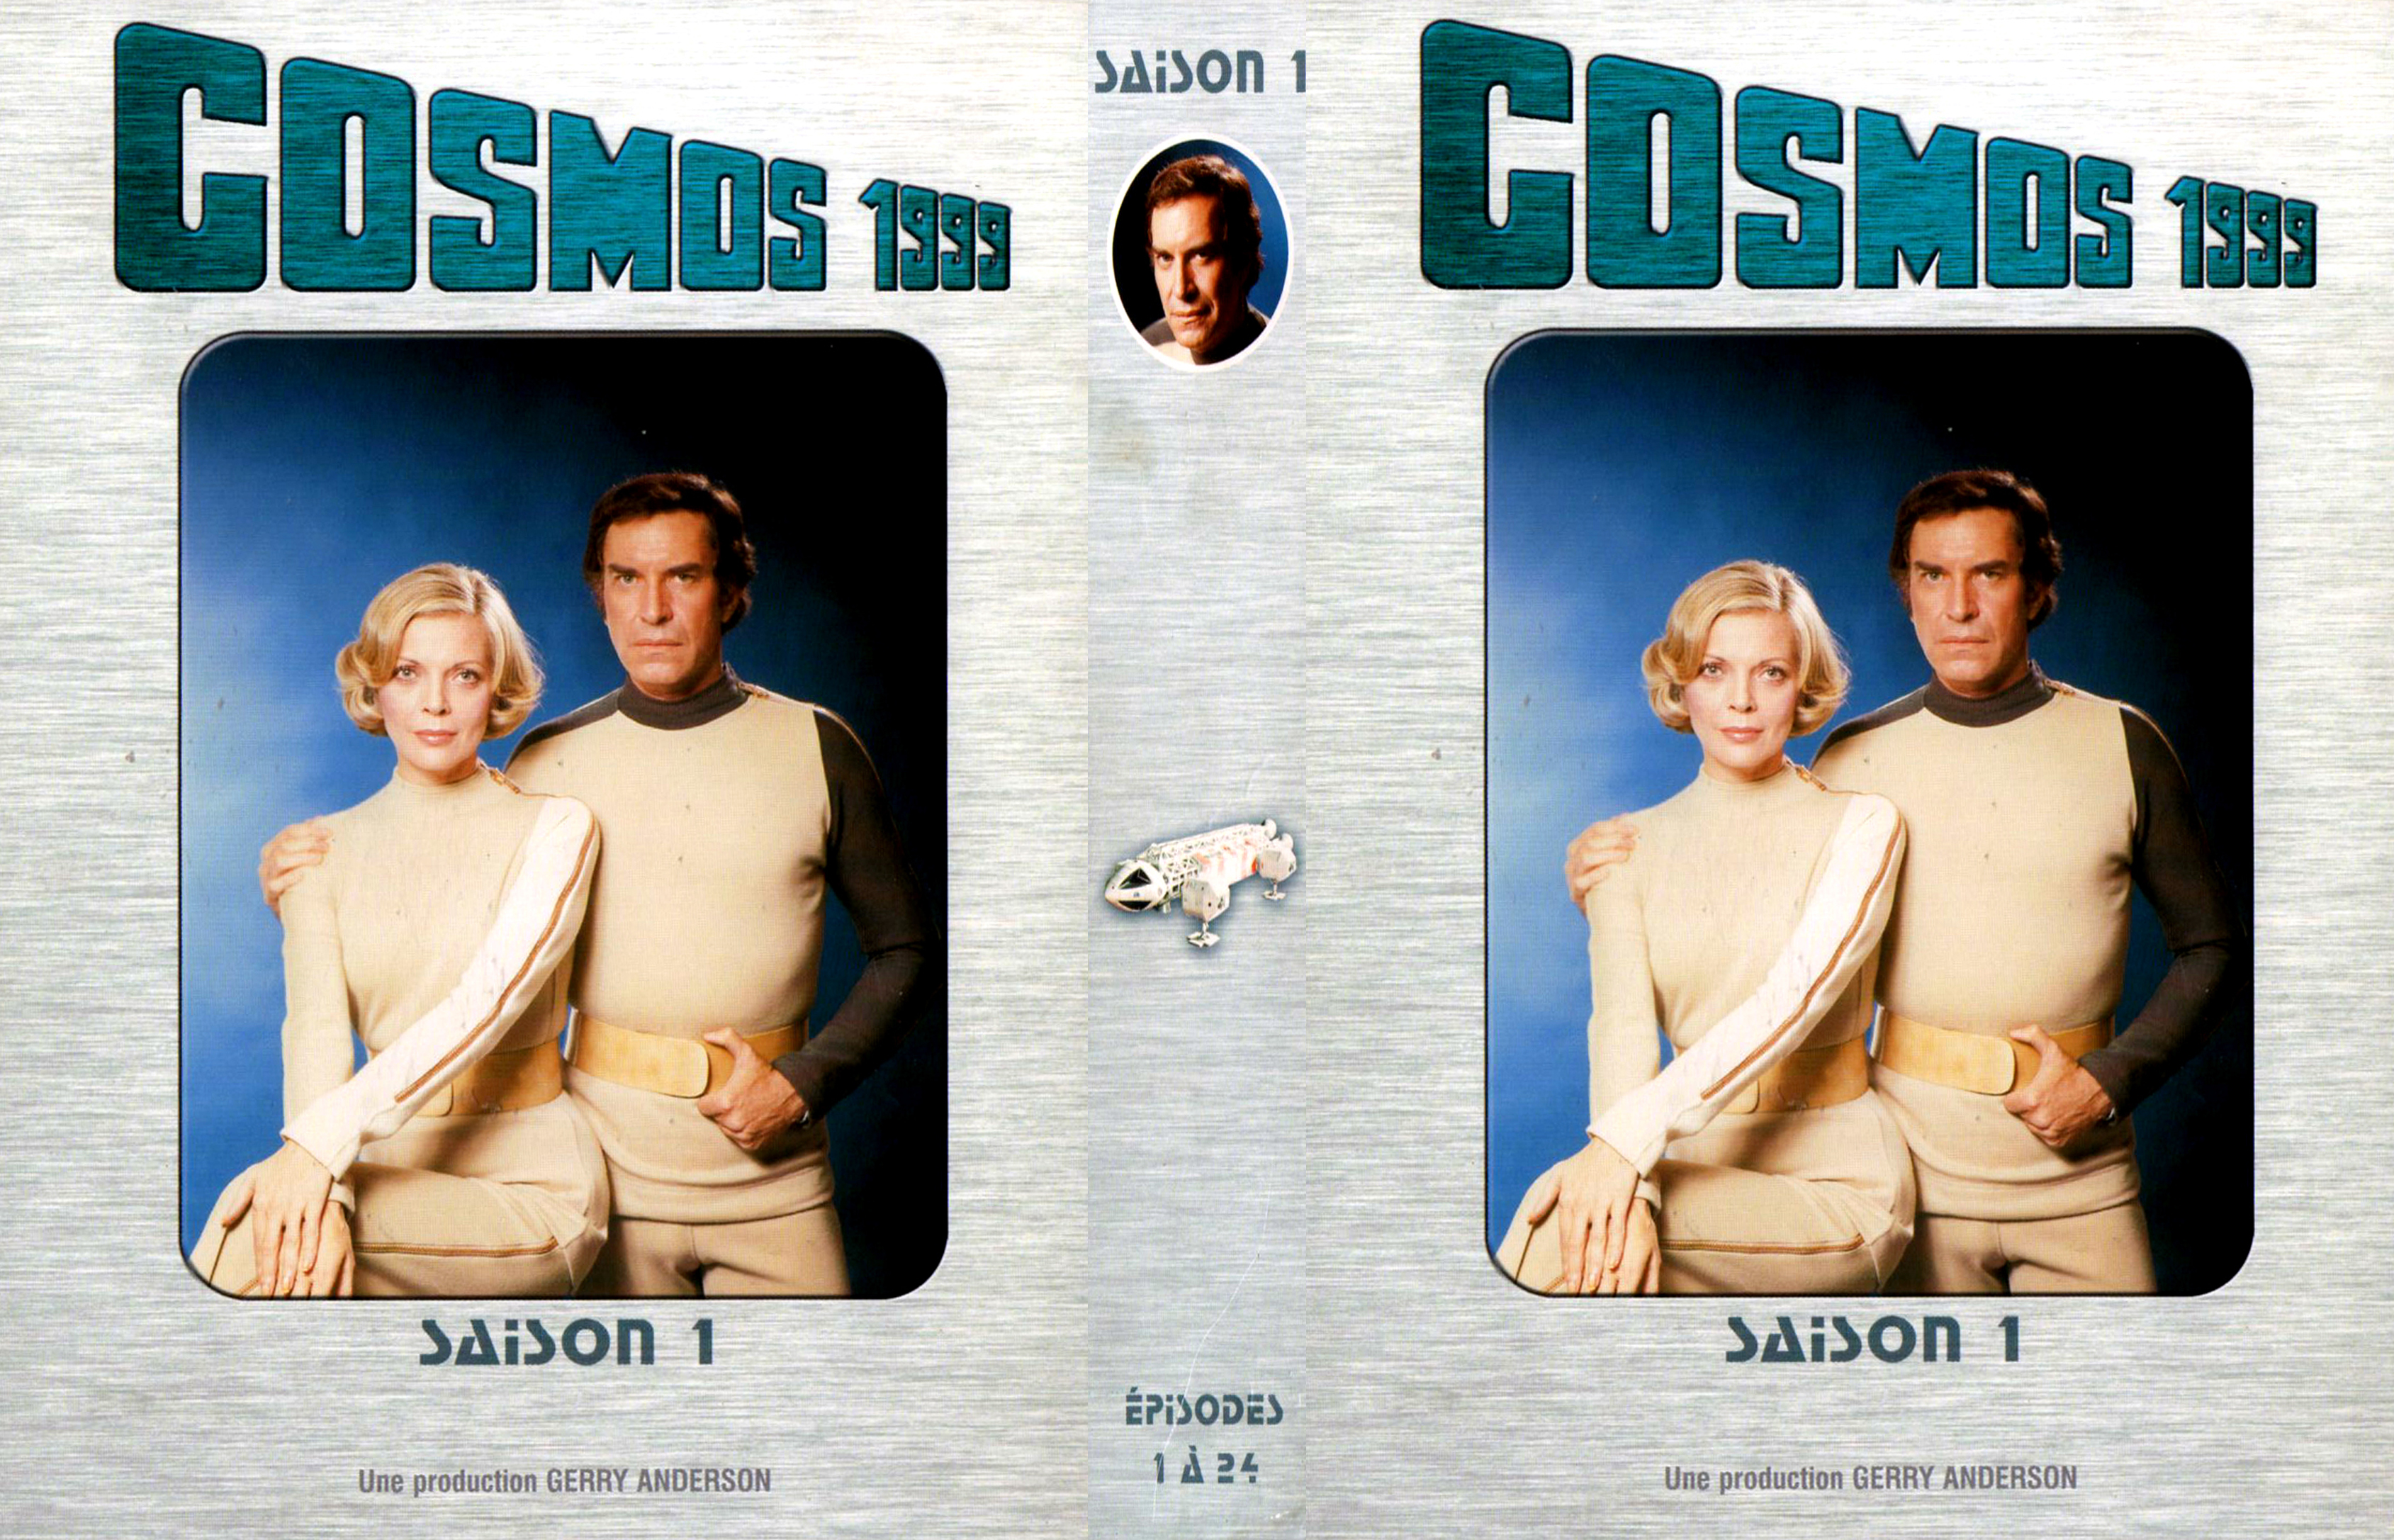 Jaquette DVD Cosmos 1999 saison 1 COFFRET